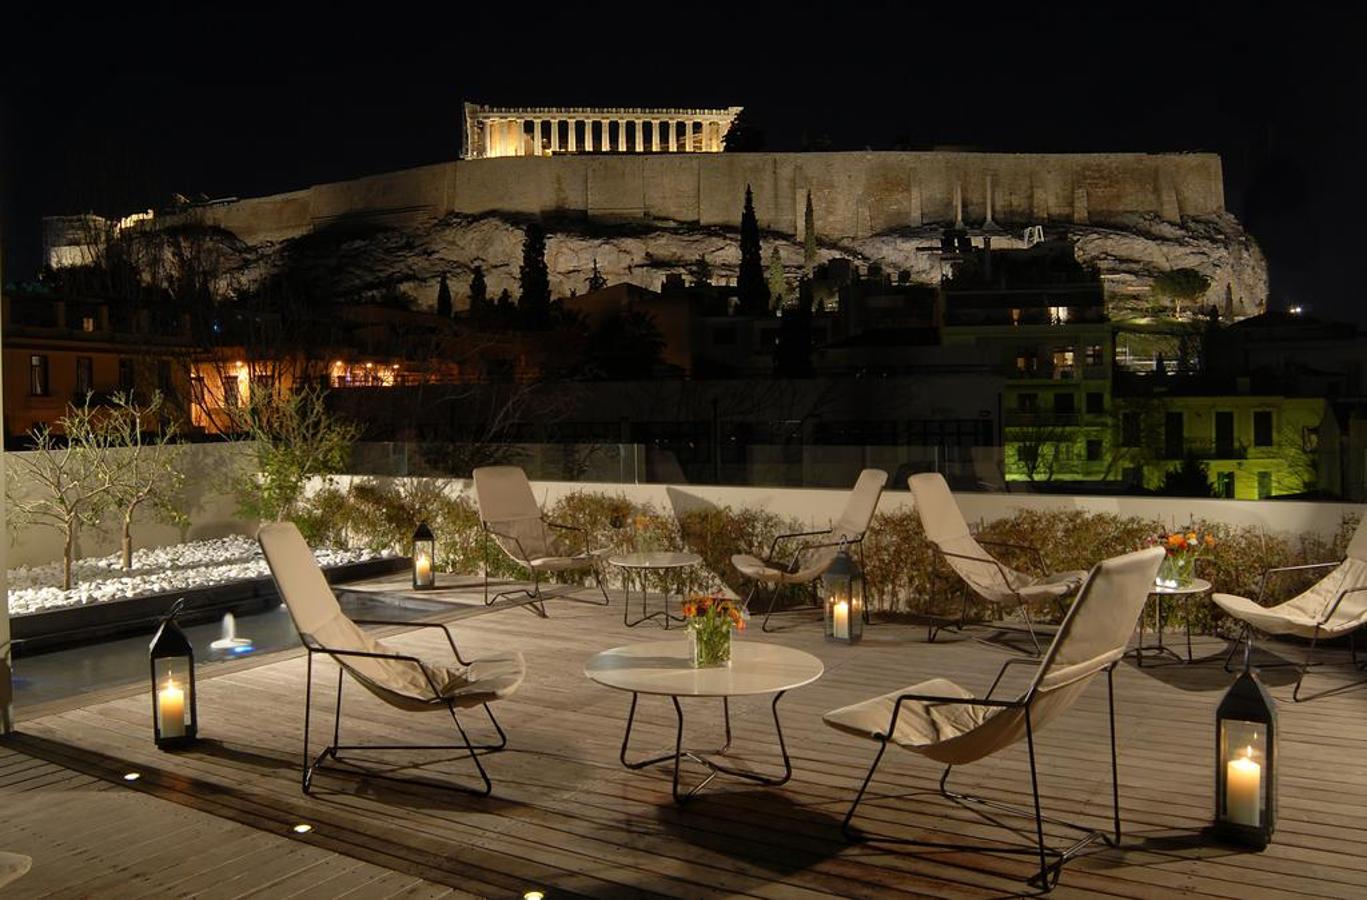 Herodion Hotel (Atenas, Grecia). A los pies de la Acrópolis y con unas vistas privilegiadas, el <a href="https://www.booking.com/searchresults.es.html?aid=1371680;sid=ea02087844b11045d523d419d14cb4fb;city=-814876;expand_sb=1;highlighted_hotels=96333;hlrd=no_dates;keep_landing=1;redirected=1;source=hotel&amp;" target="_blank">Hotel Herodion</a> tiene un precioso jardín en la azotea desde la que contemplar la grandiosidad del paisaje de Atenas.